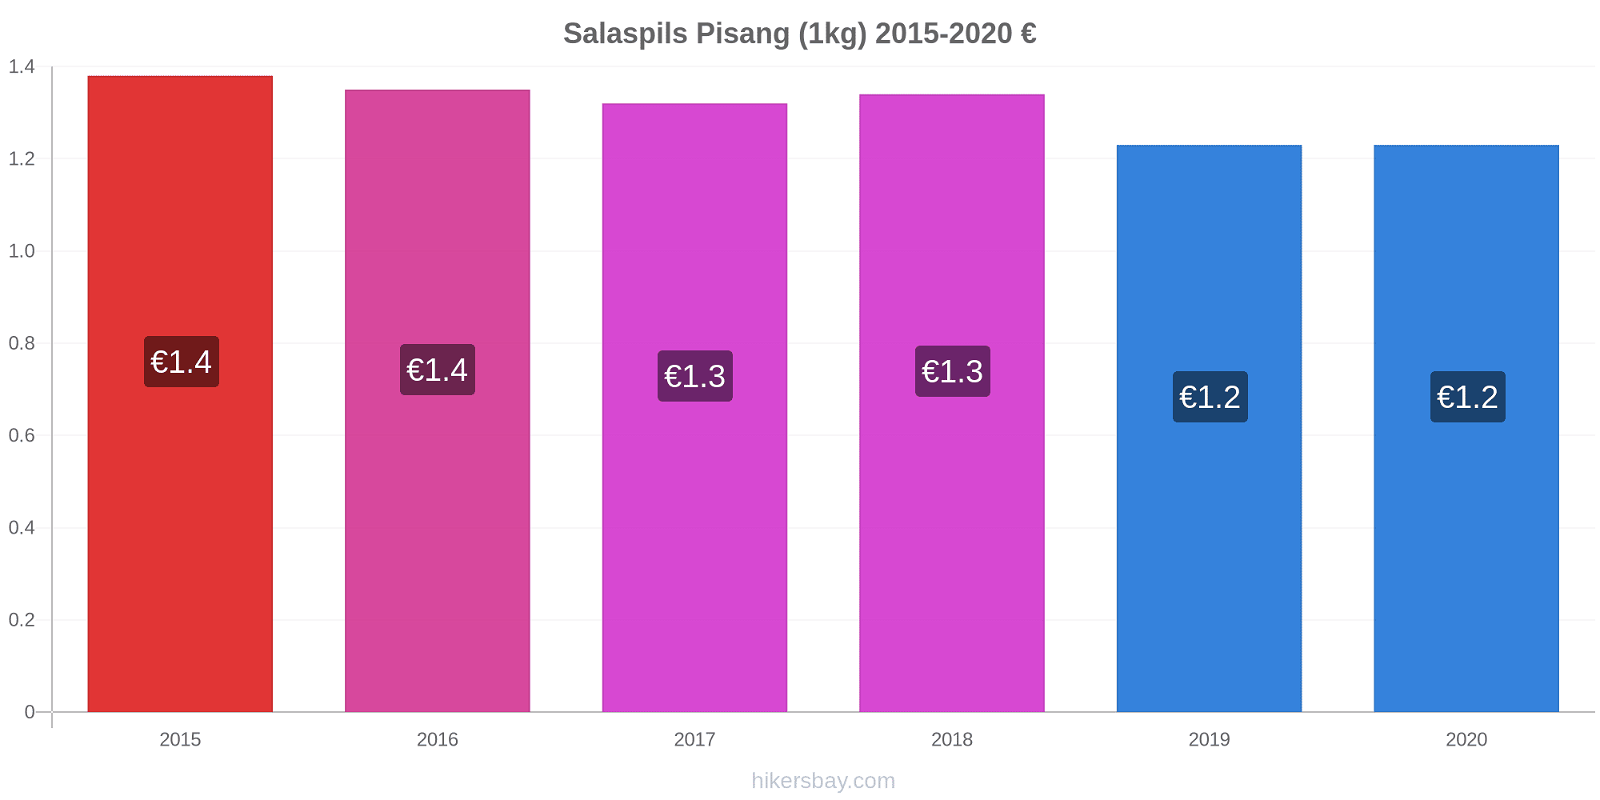 Salaspils perubahan harga Pisang (1kg) hikersbay.com